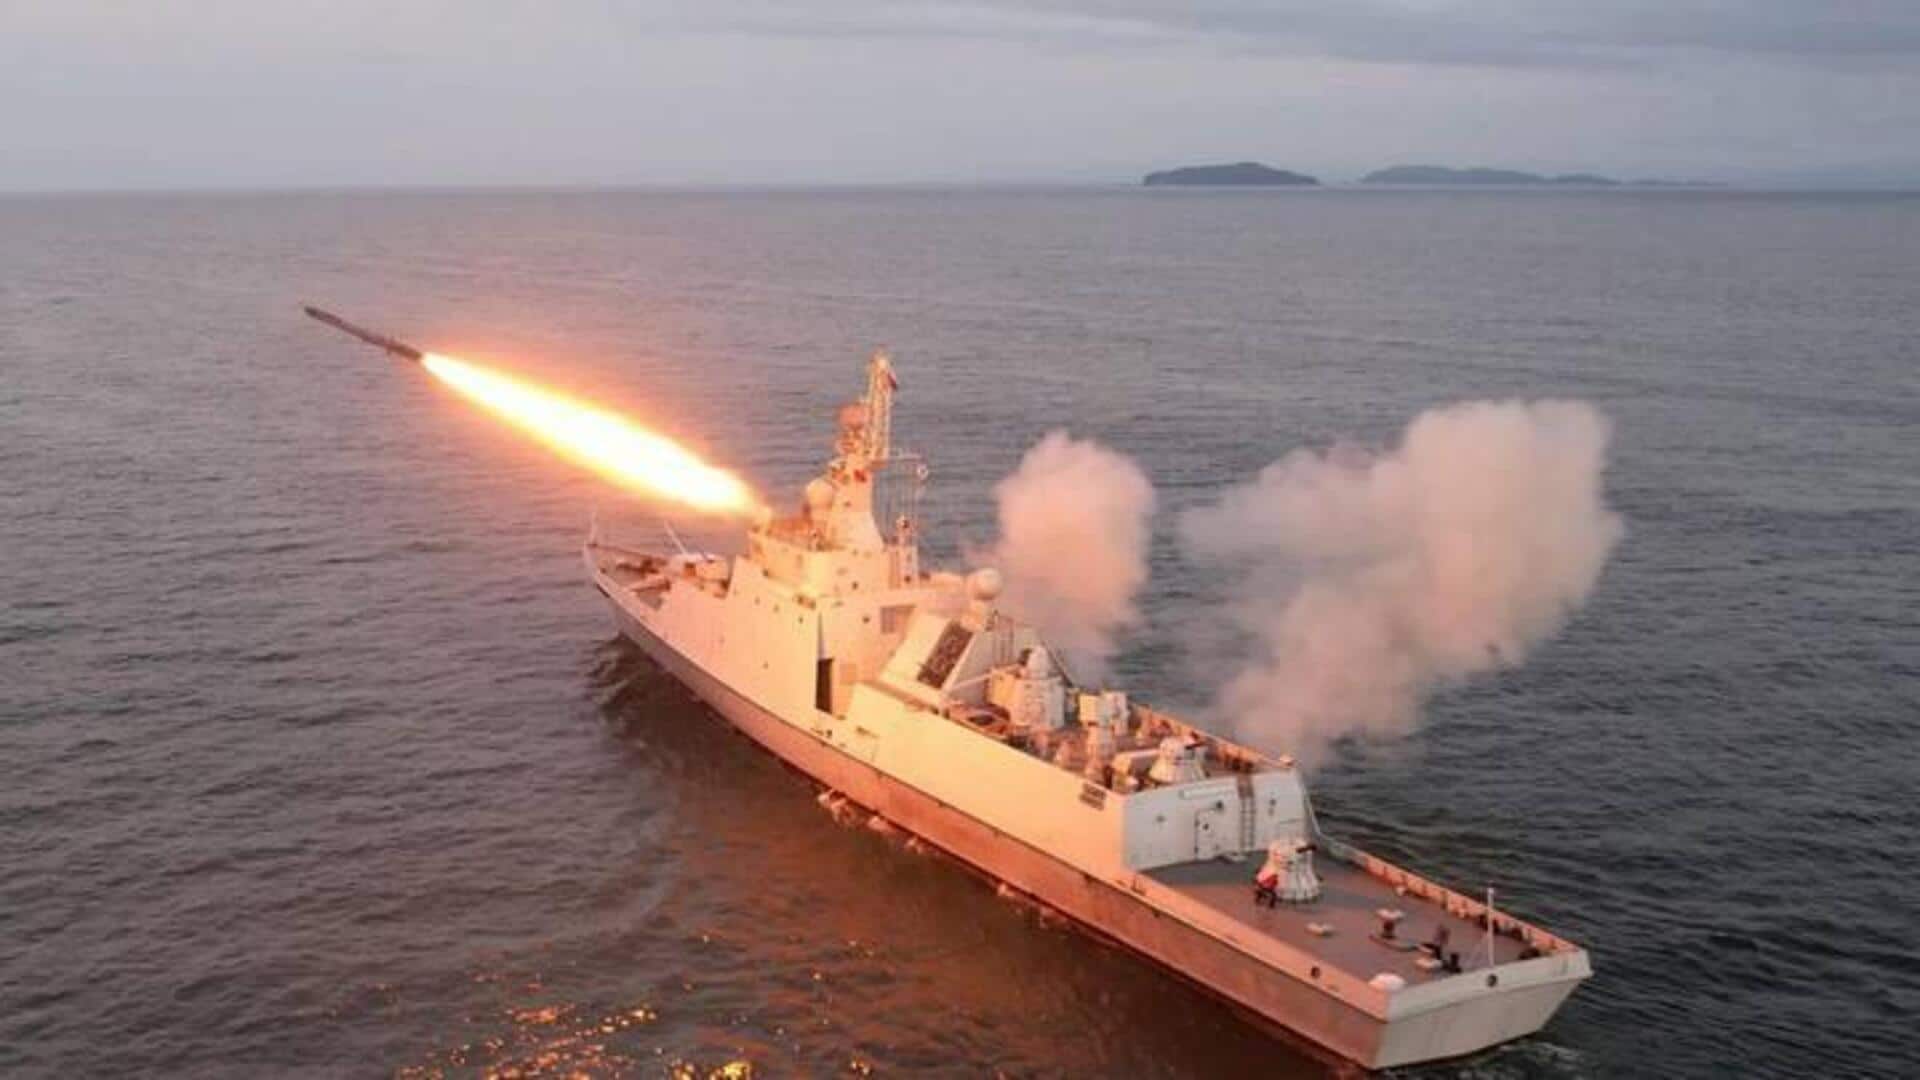 Houthi Missile Strikes: ఎర్ర సముద్రంలో రెచ్చిపోయిన హౌతీలు.. నౌకను వదిలి వెళ్లిన సిబ్బంది 